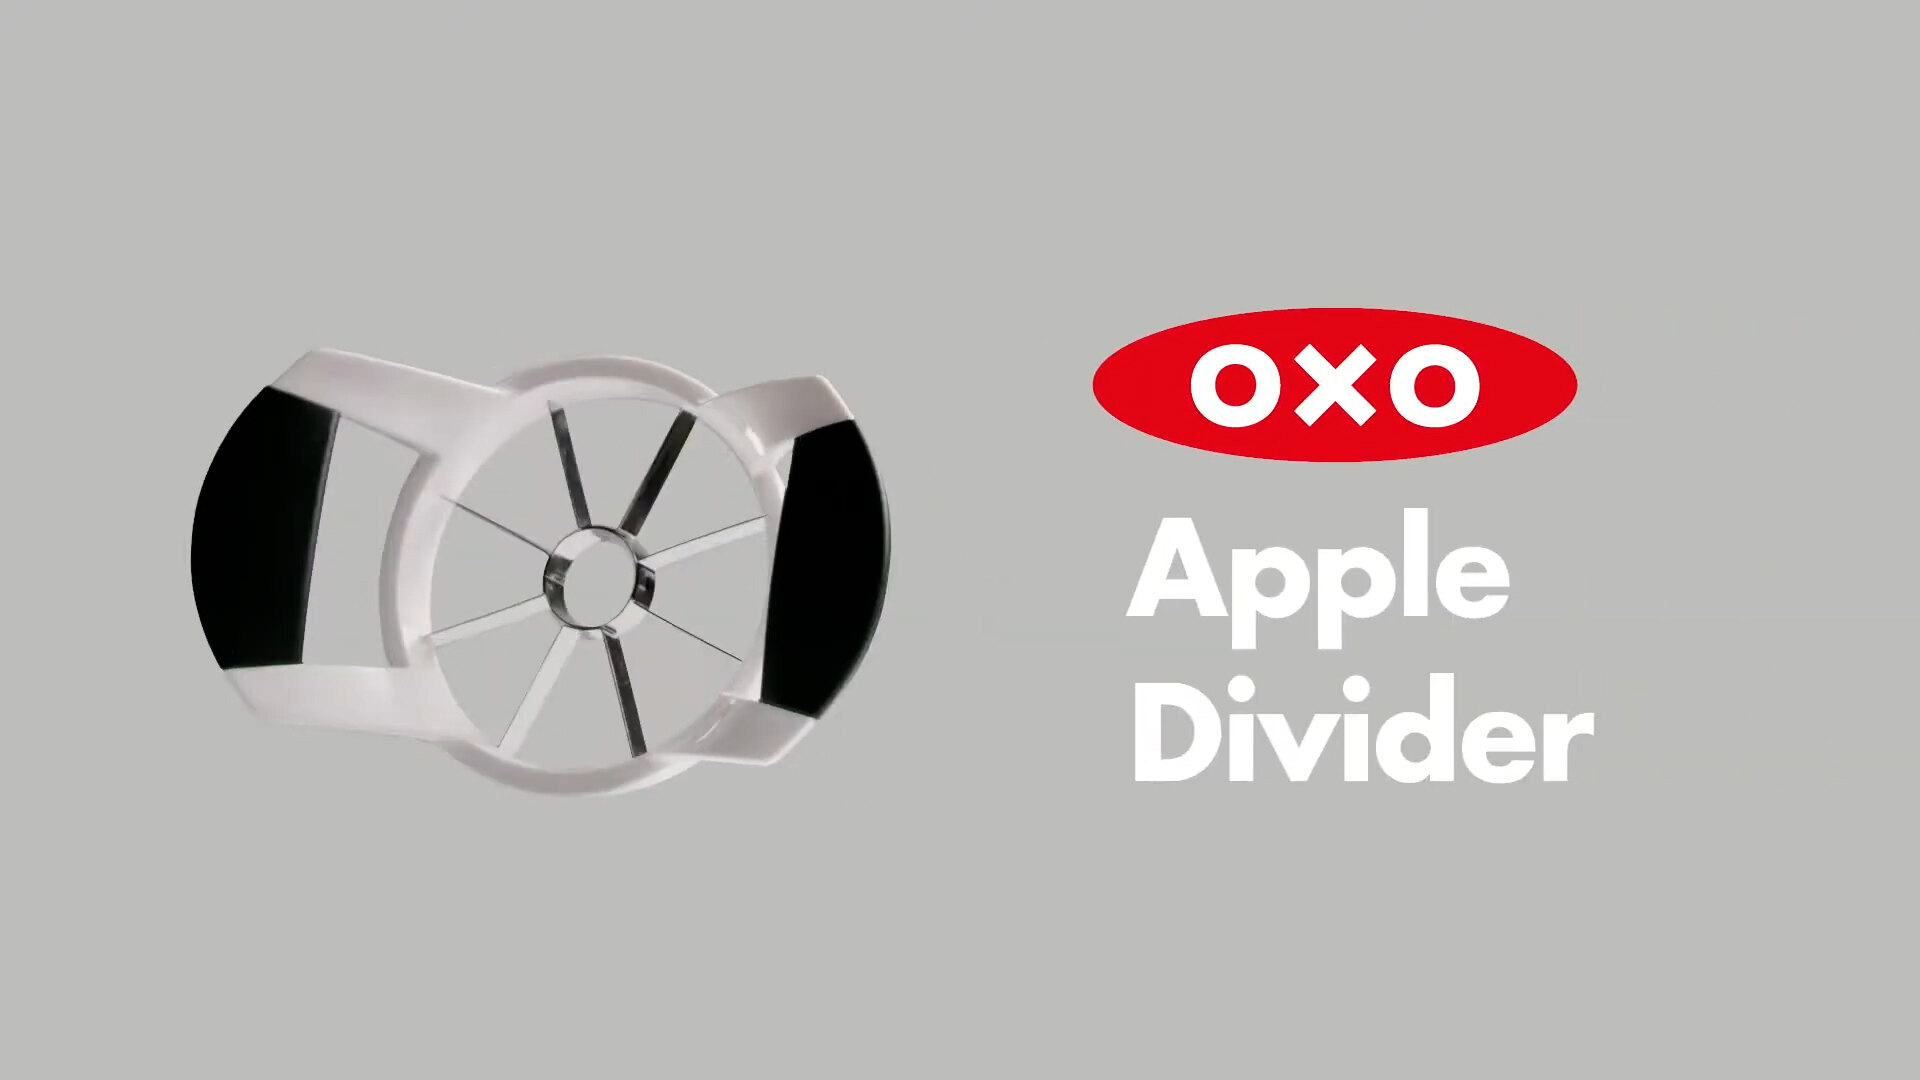 OXO Good Grips Apple Slicer, Corer and Divider,White